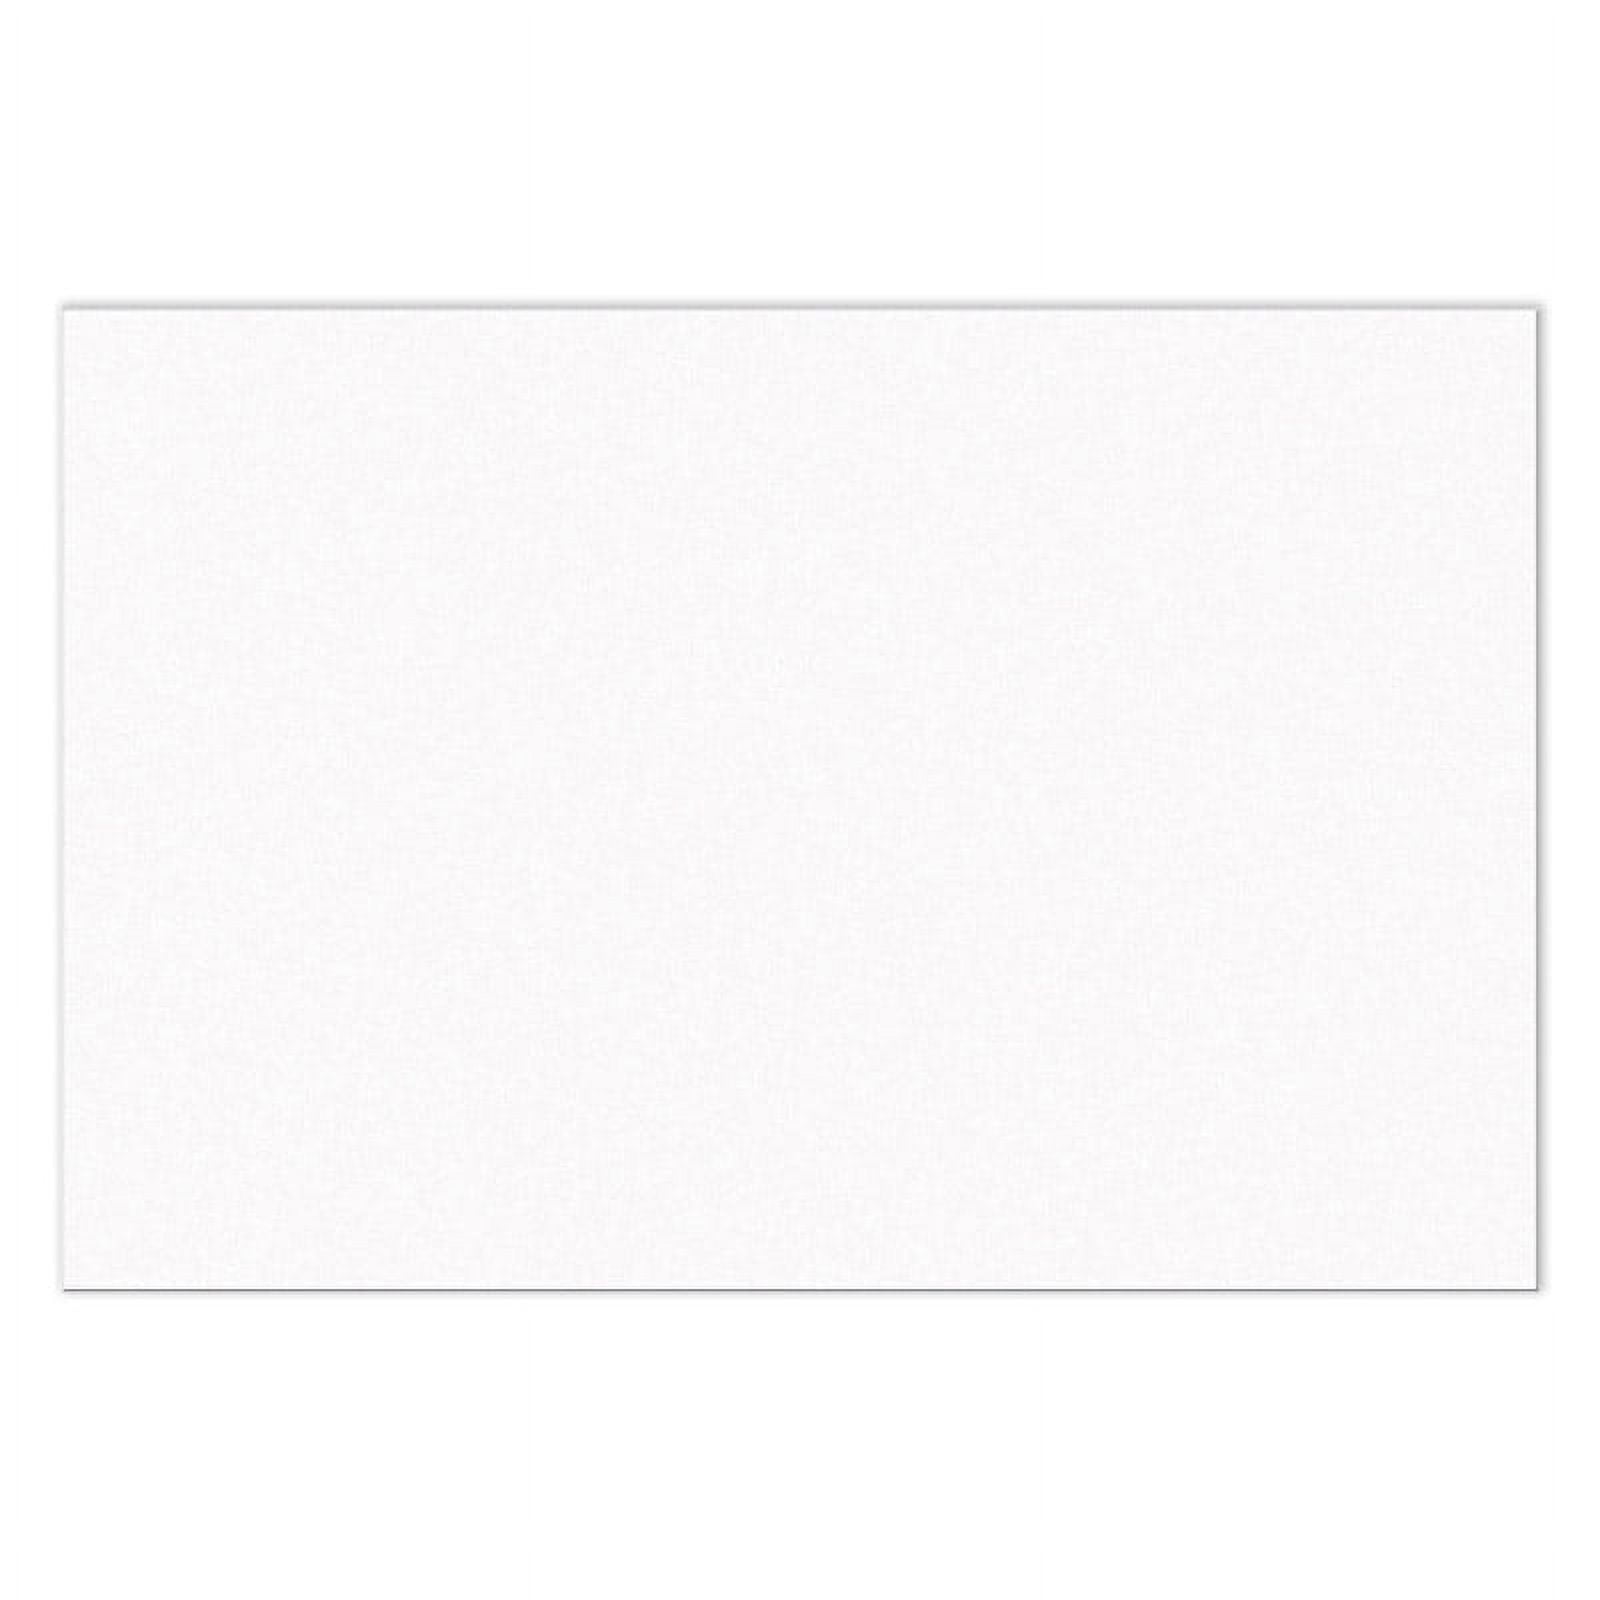 SunWorksÂ® Bright White Construction Paper, 12â€ x 18â€ , 100 Sheets 